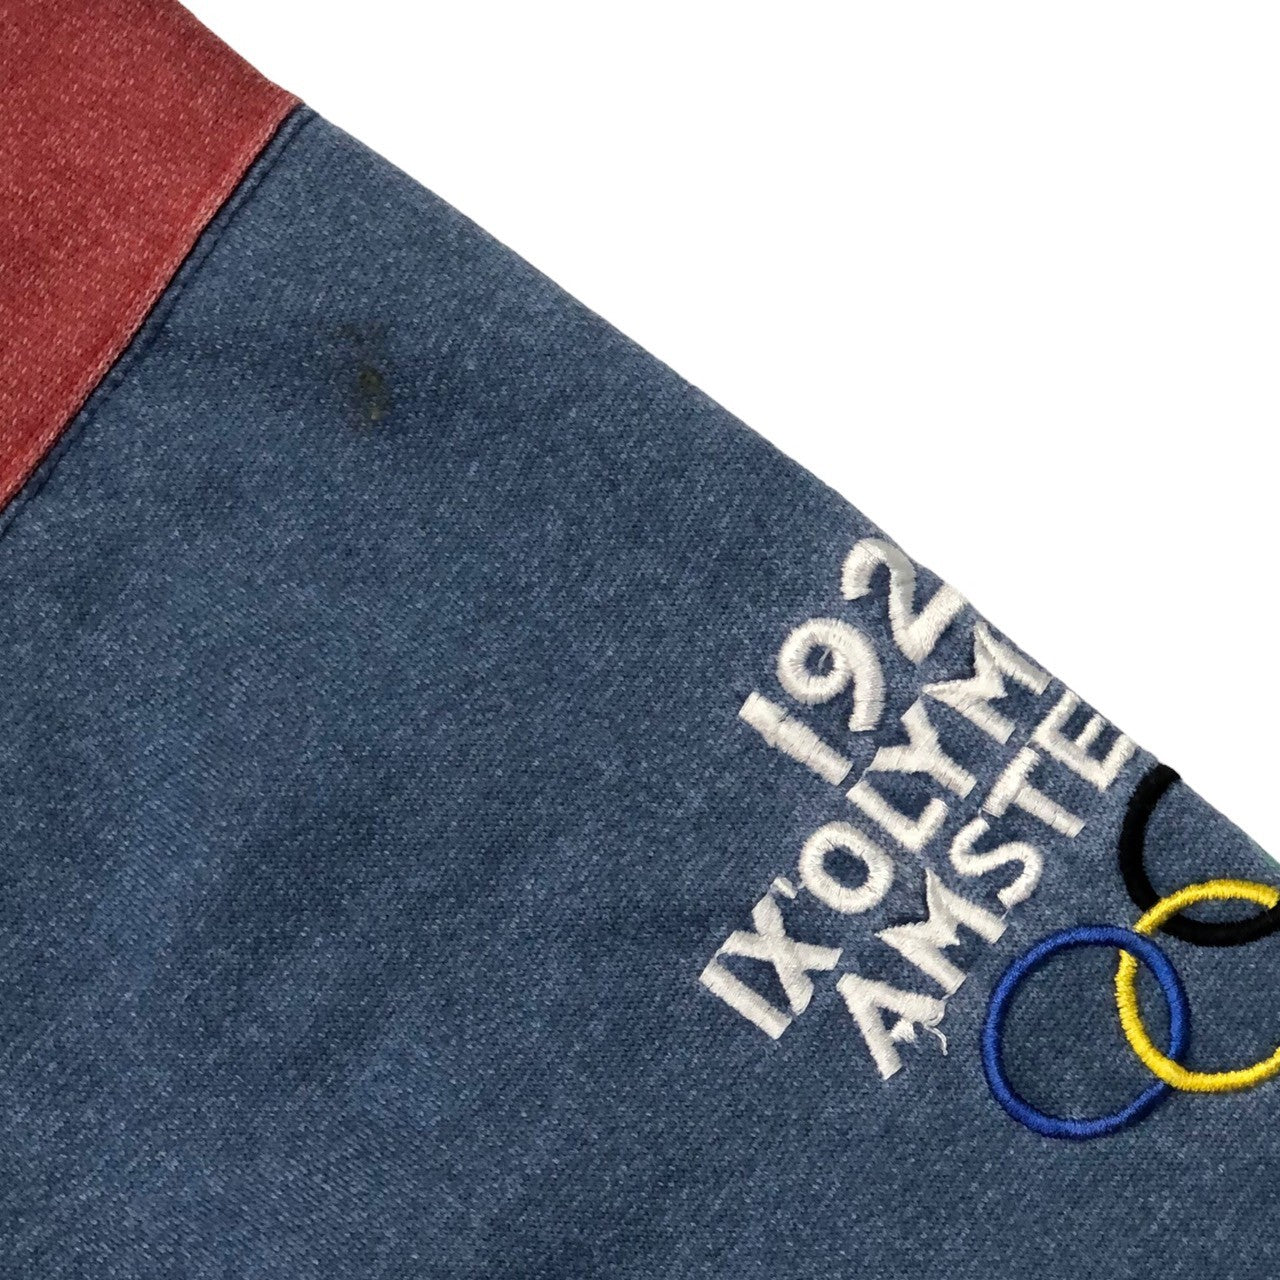 adidas(アディダス) 80's 1928 IX olympiade Amsterdam sweatshirt  ロサンゼルスオリンピック アムステルダム スウェットシャツ 80年代 ヴィンテージ SIZE表記消え(XL程度) ブルー×レッド 袖切りっぱなしカスタム品